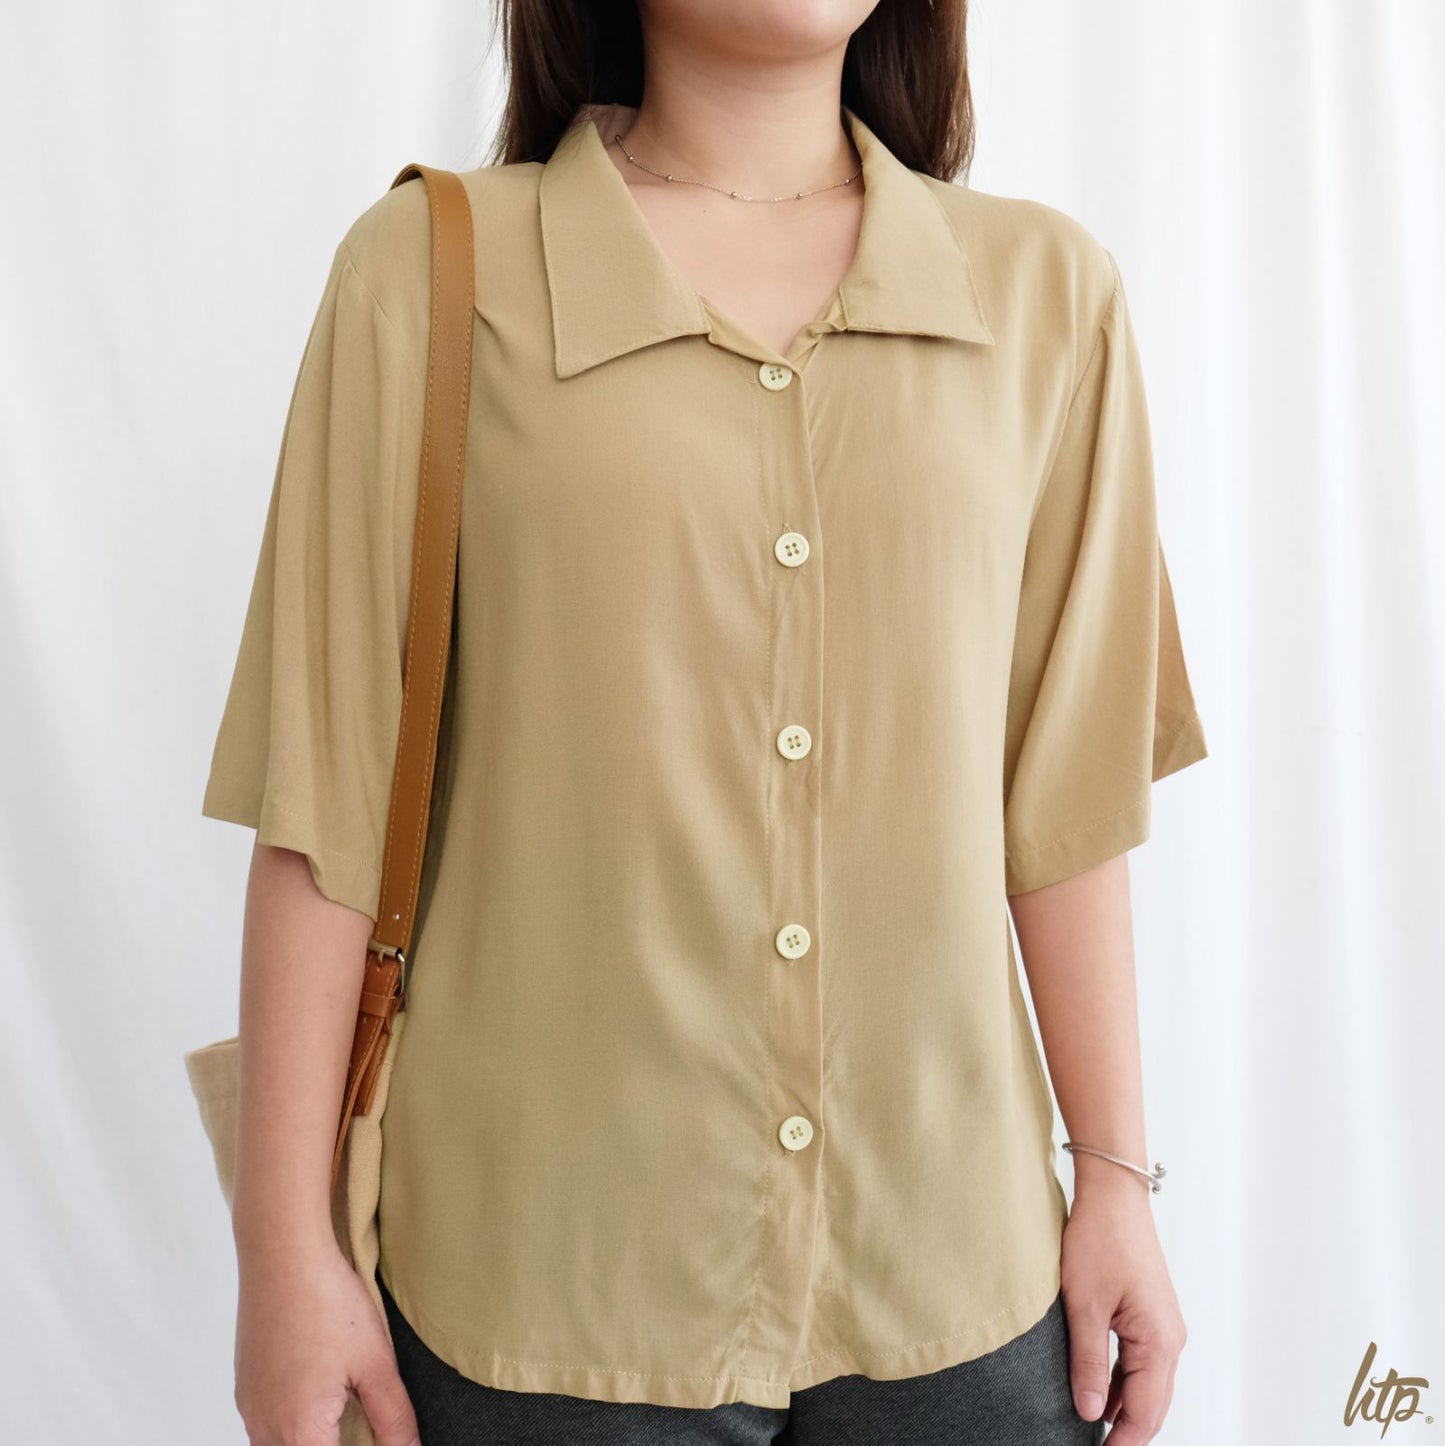 HTP Korean Soft Linen Button-Down Shirt